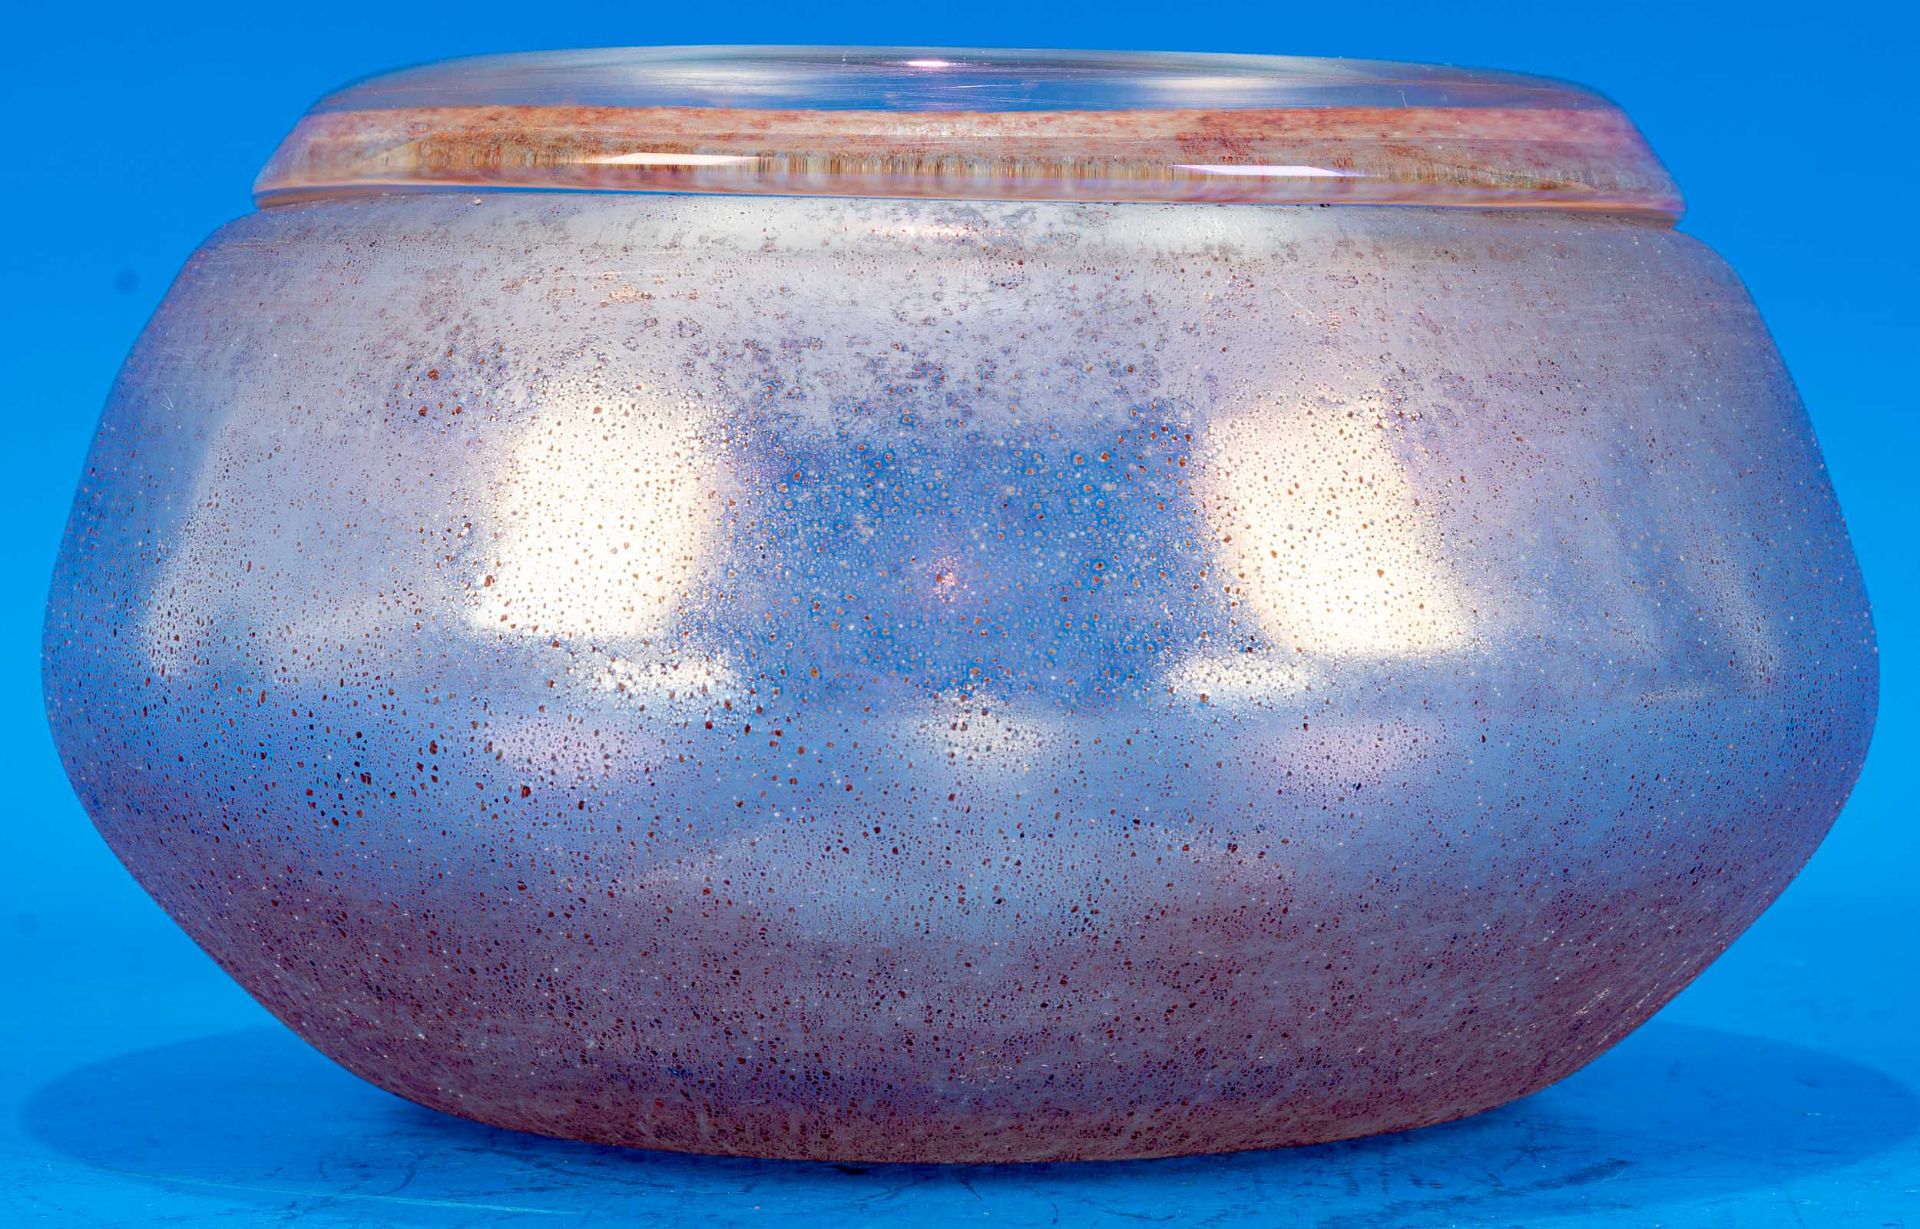 Pflanztopf bzw. Schwimmkerzenvase, "gedrückte" Form, dickwandiges lustrierendes Klarglas, Außenwand